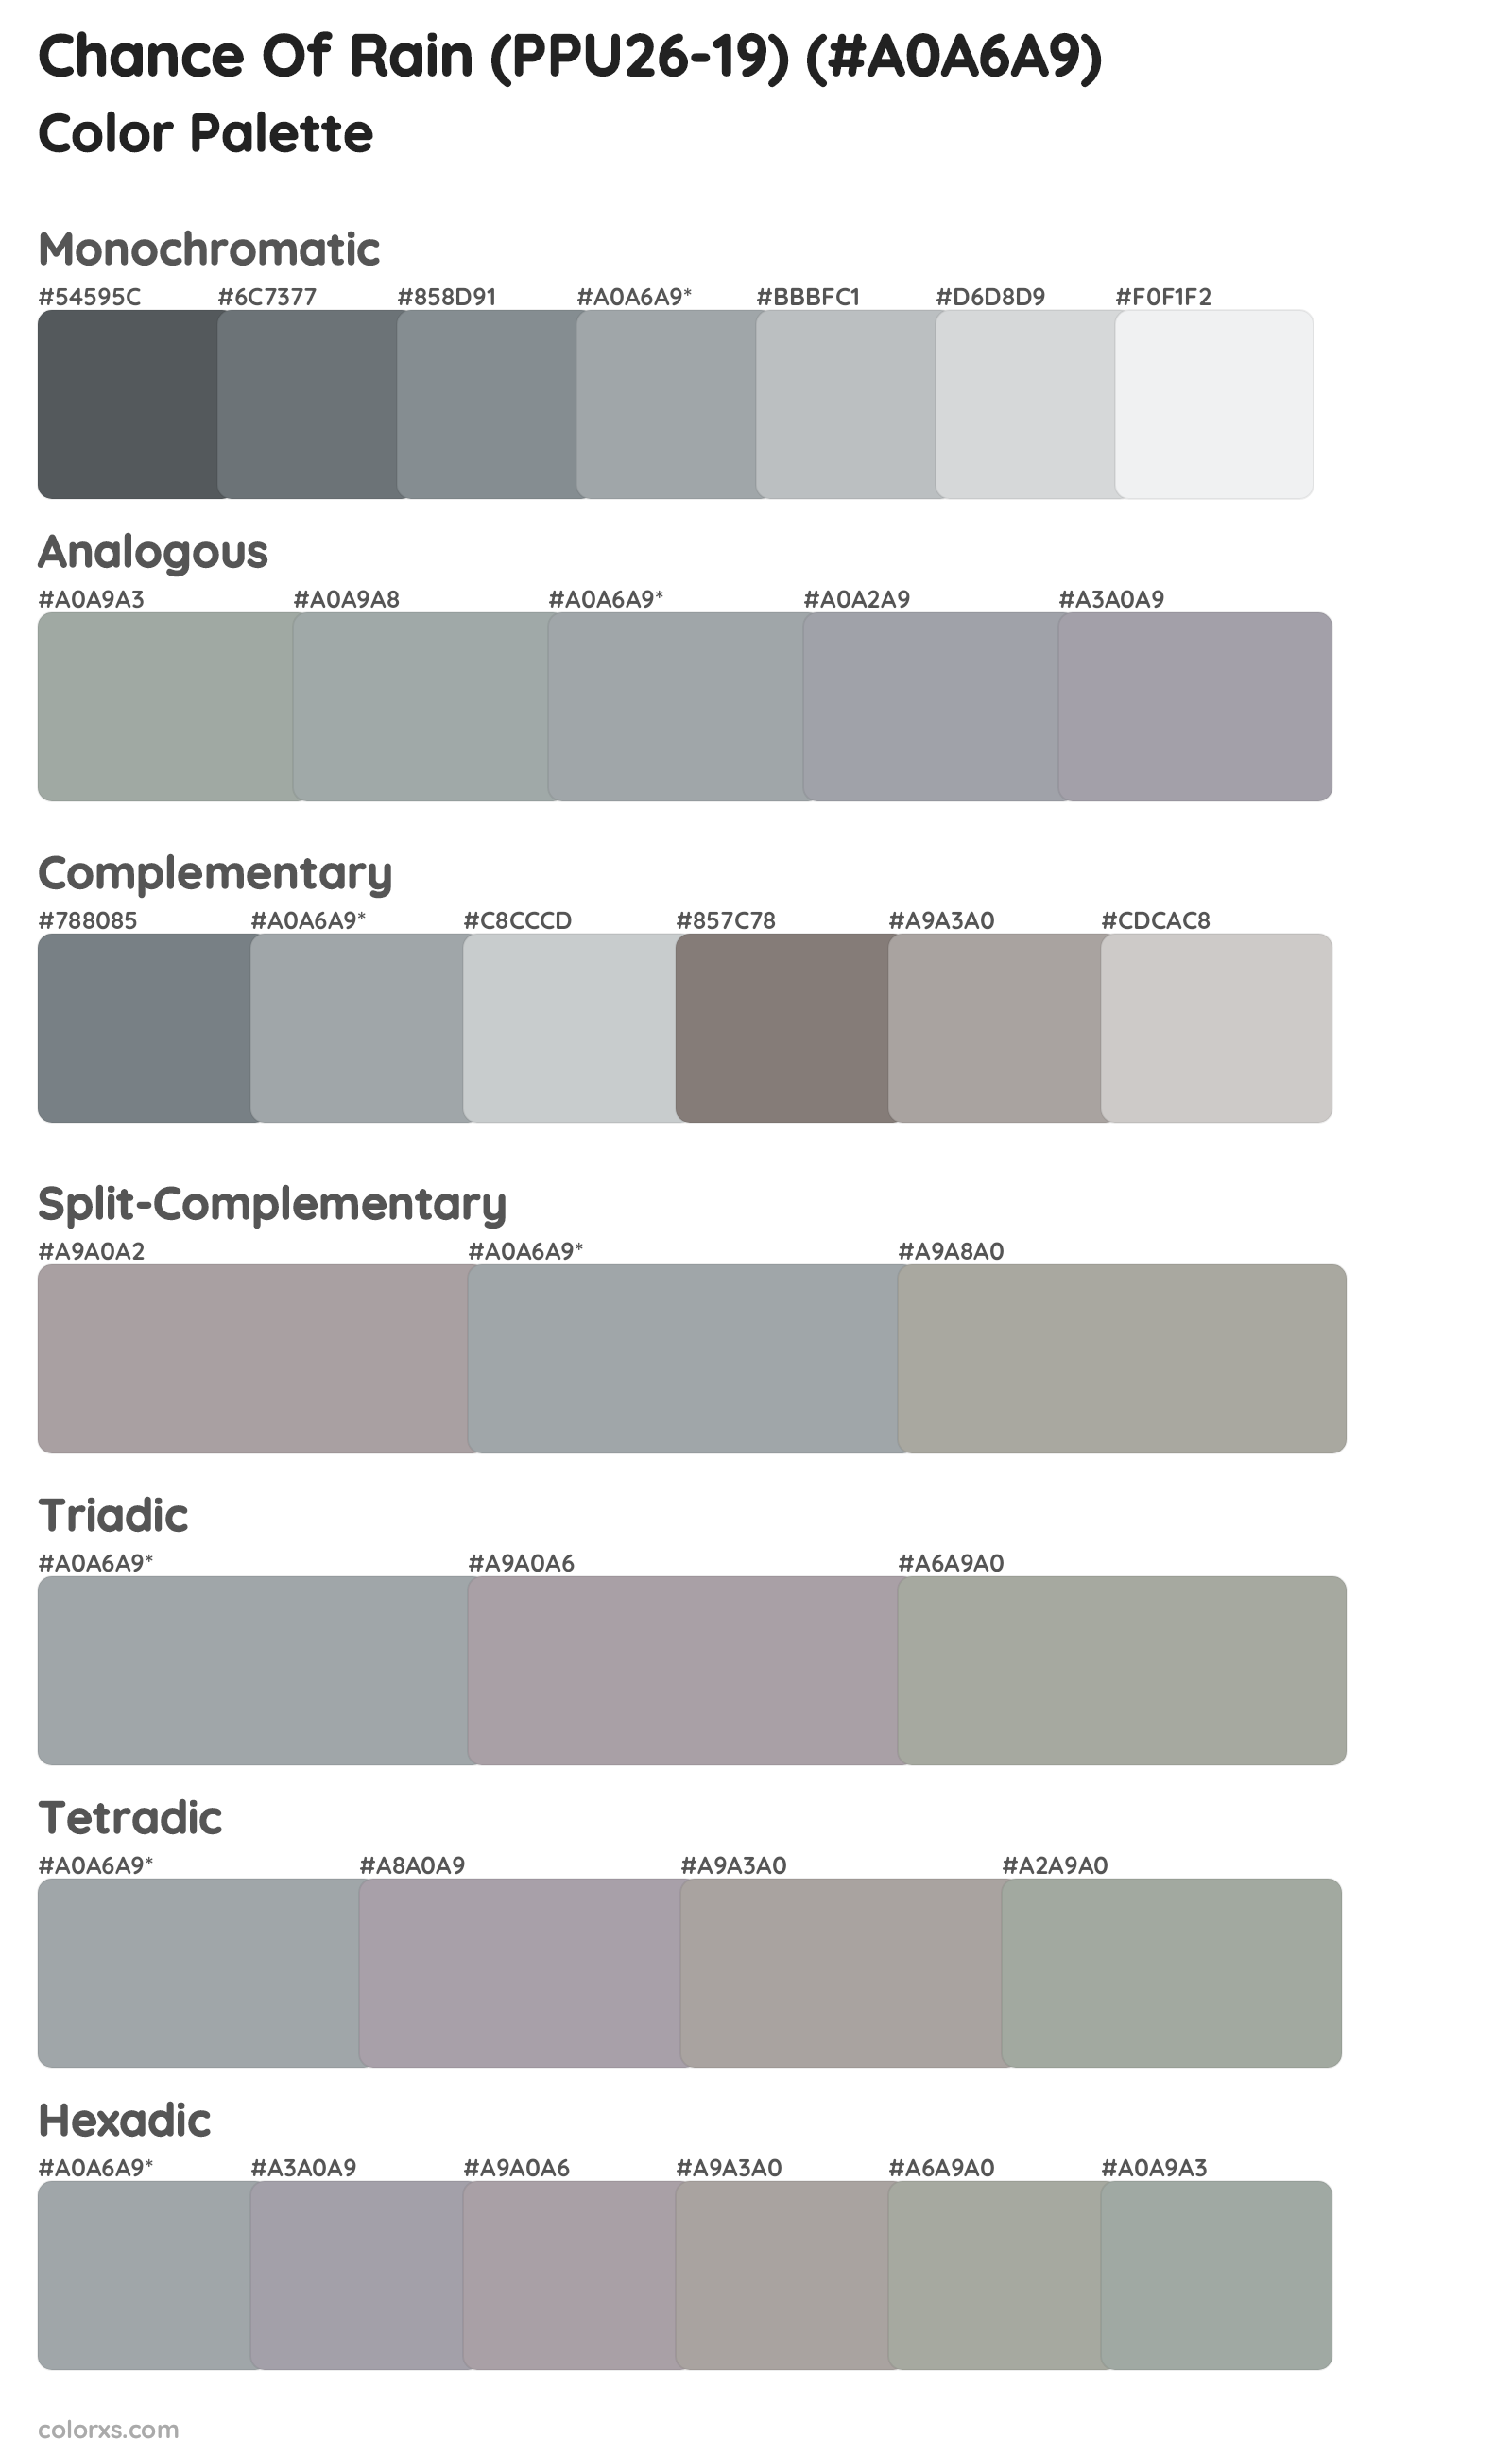 Chance Of Rain (PPU26-19) Color Scheme Palettes